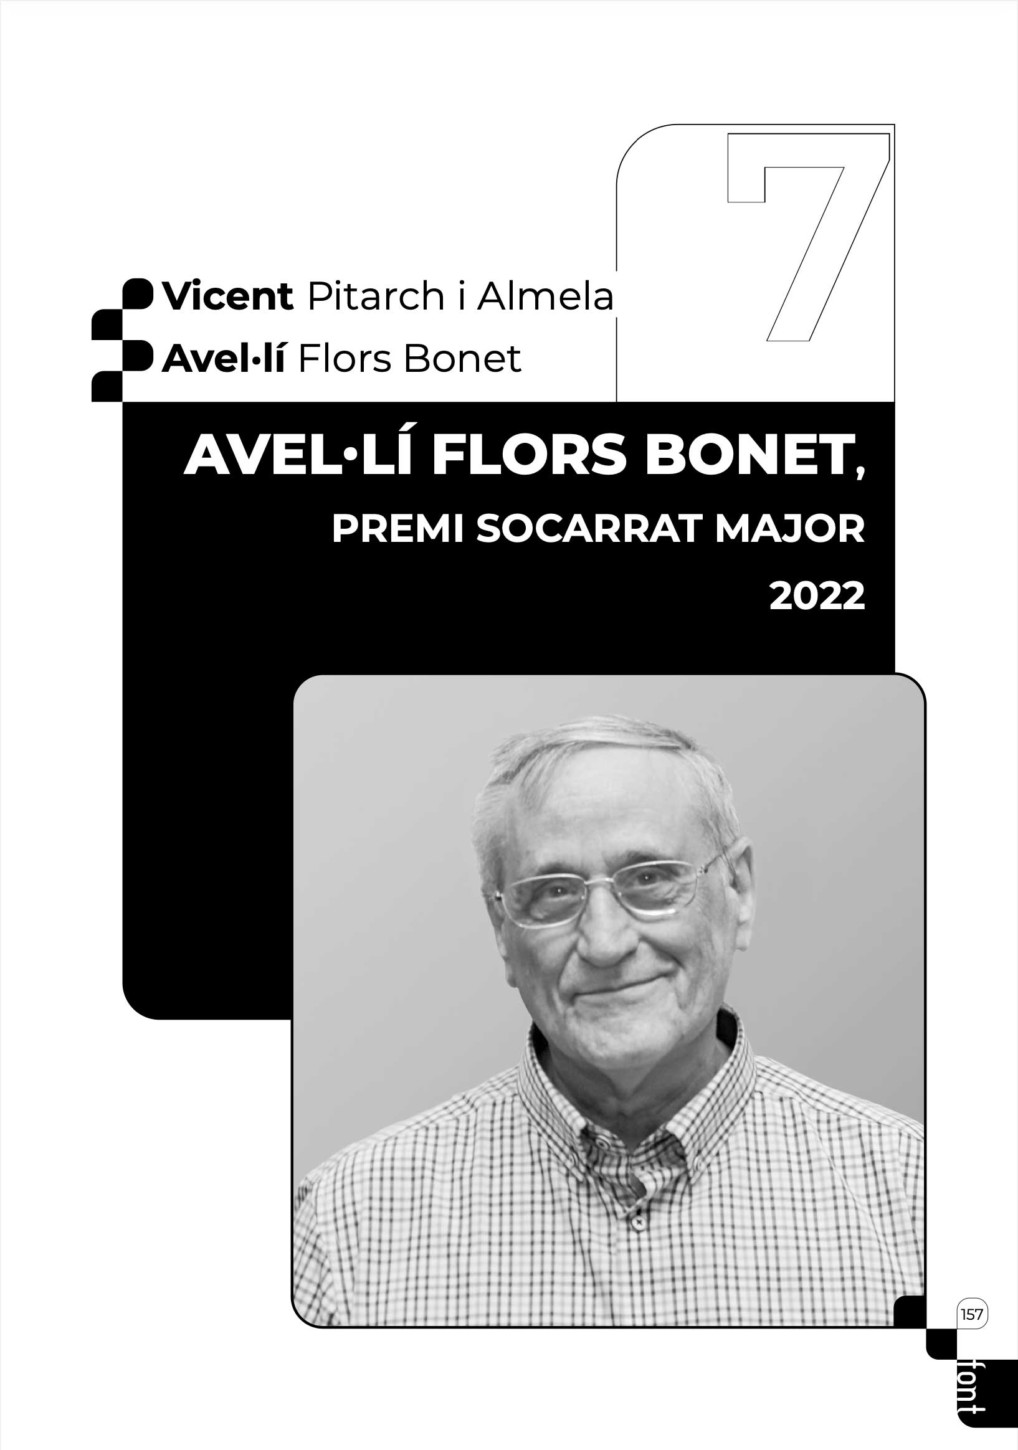 Discurs al Socarrat Major 2022, Avel·lí Flors